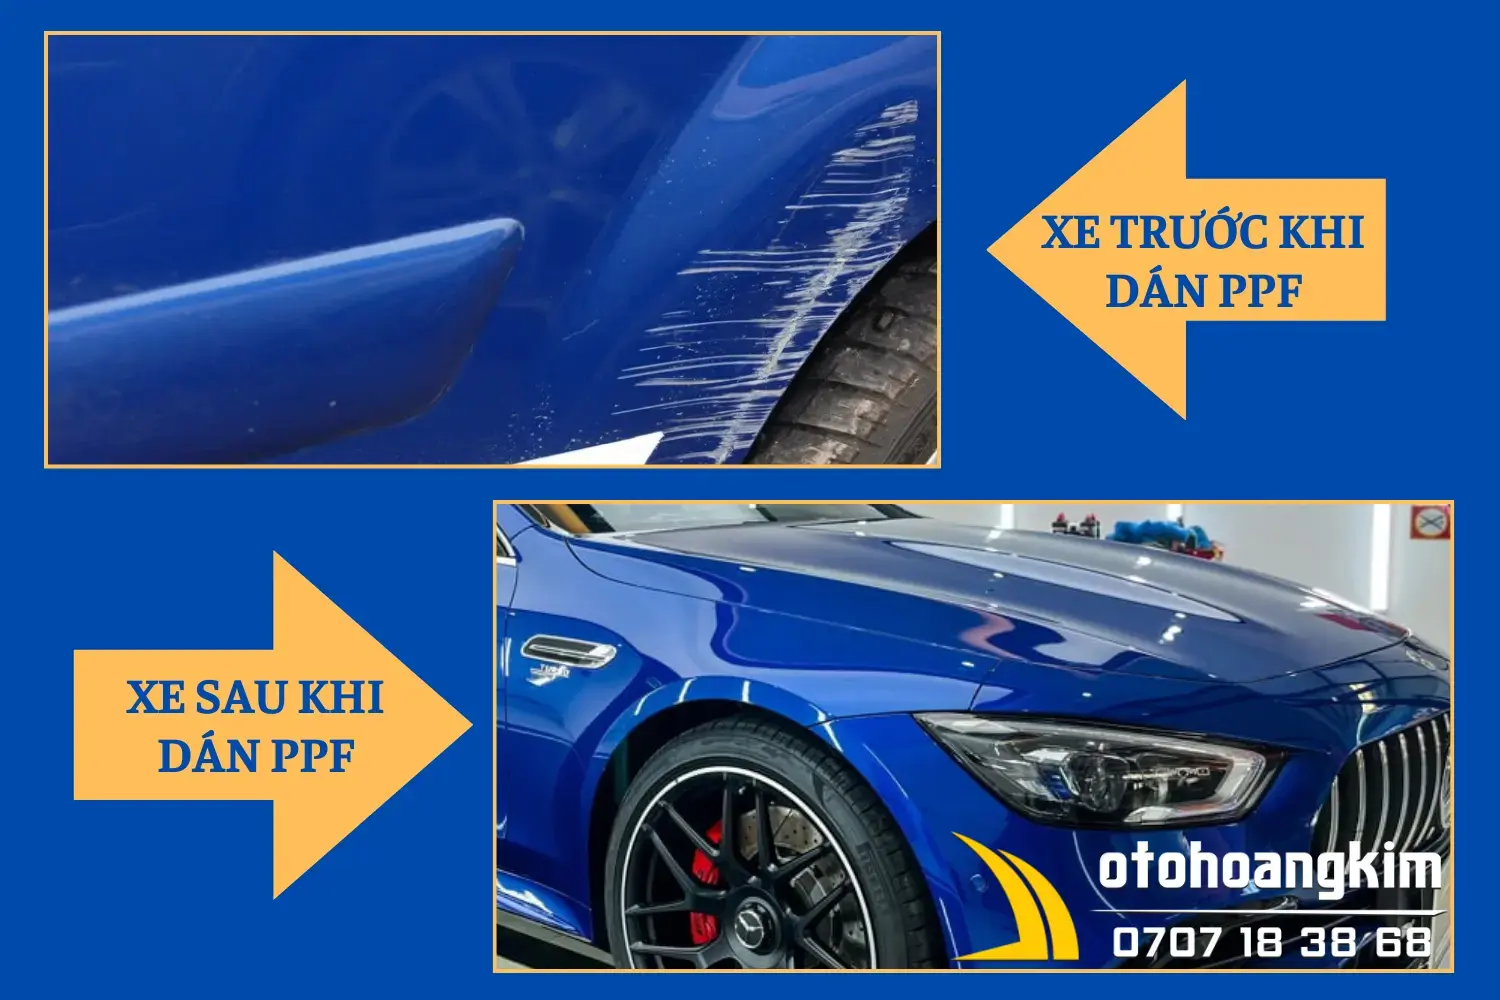 Hình ảnh trước và sau khi dán PPF cho ô tô